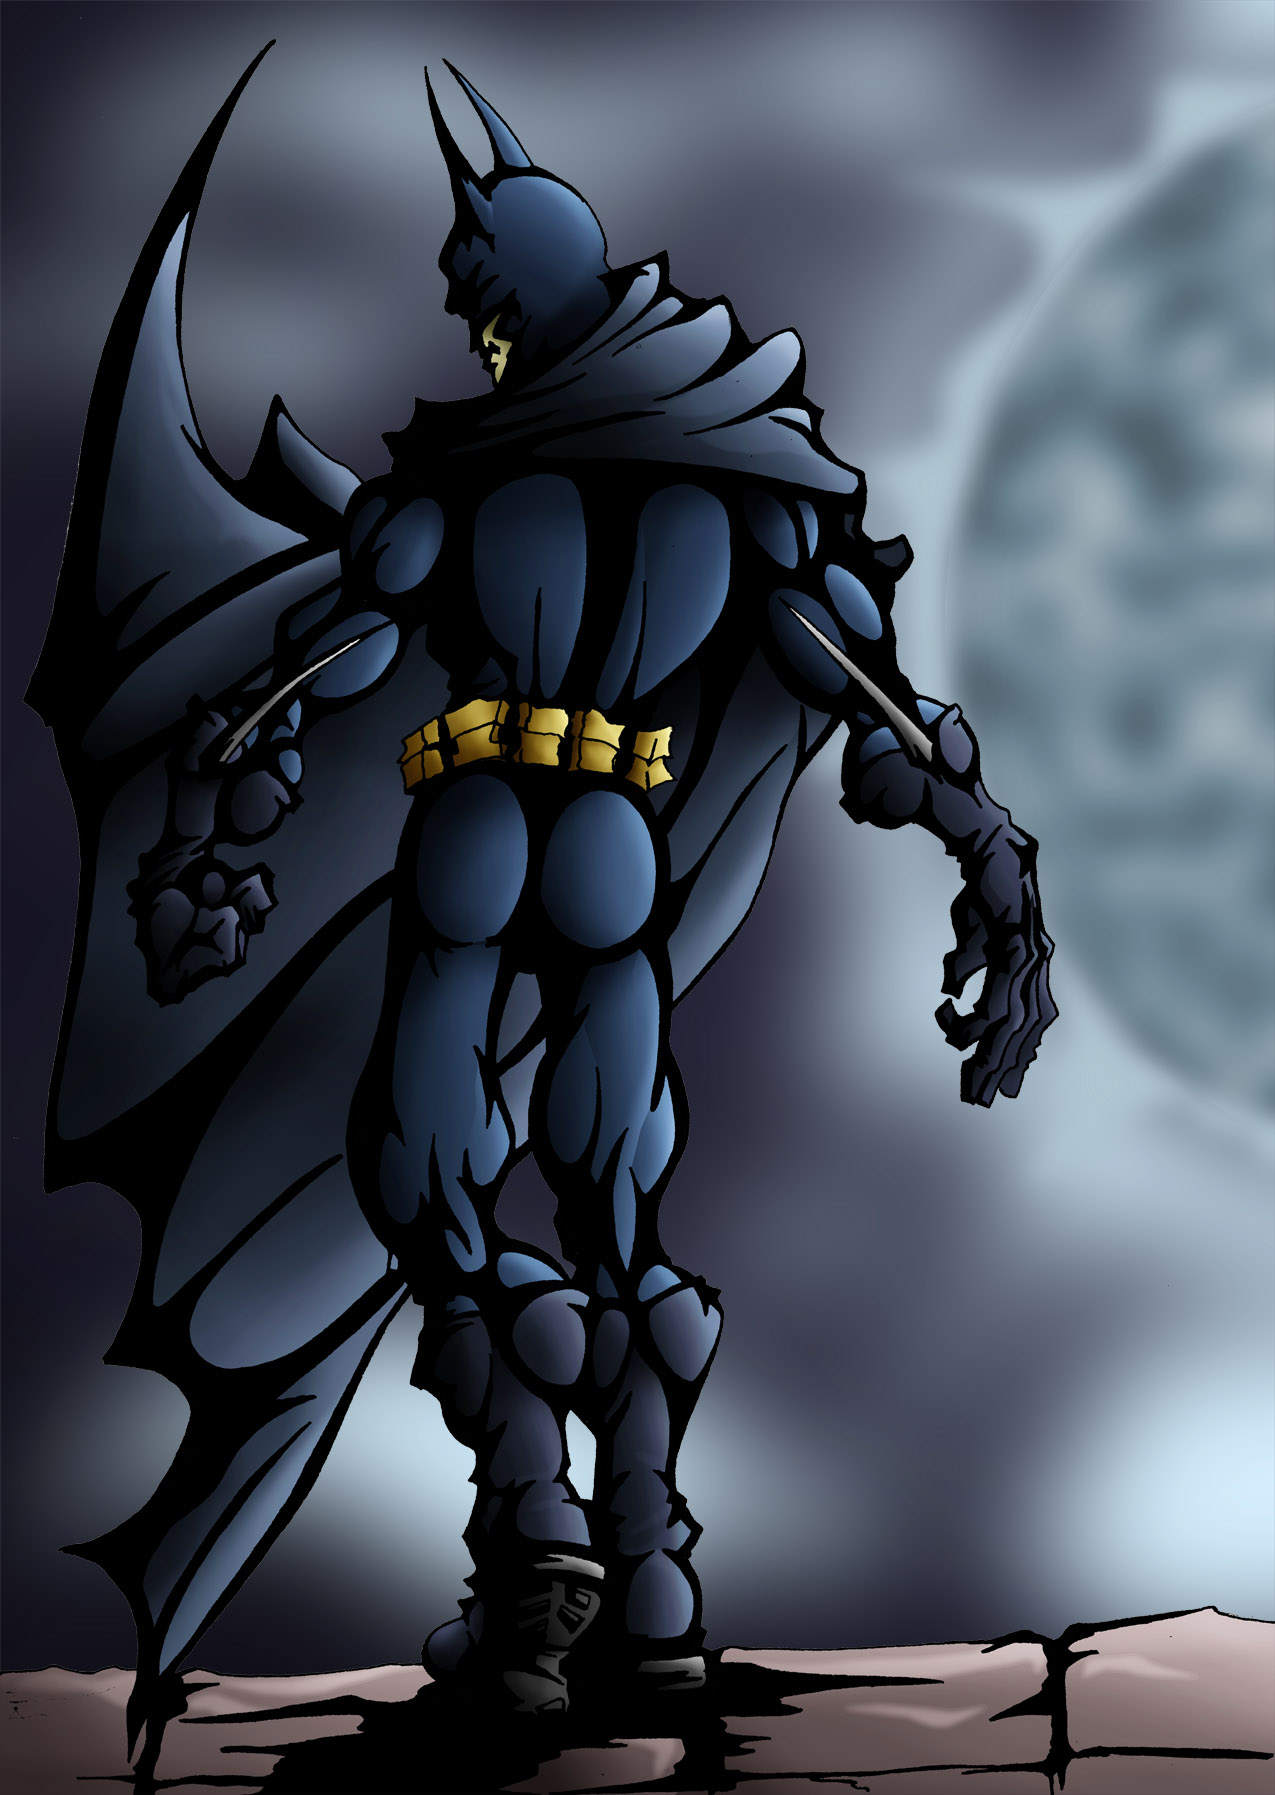 The Dark Knight by VooDooChild